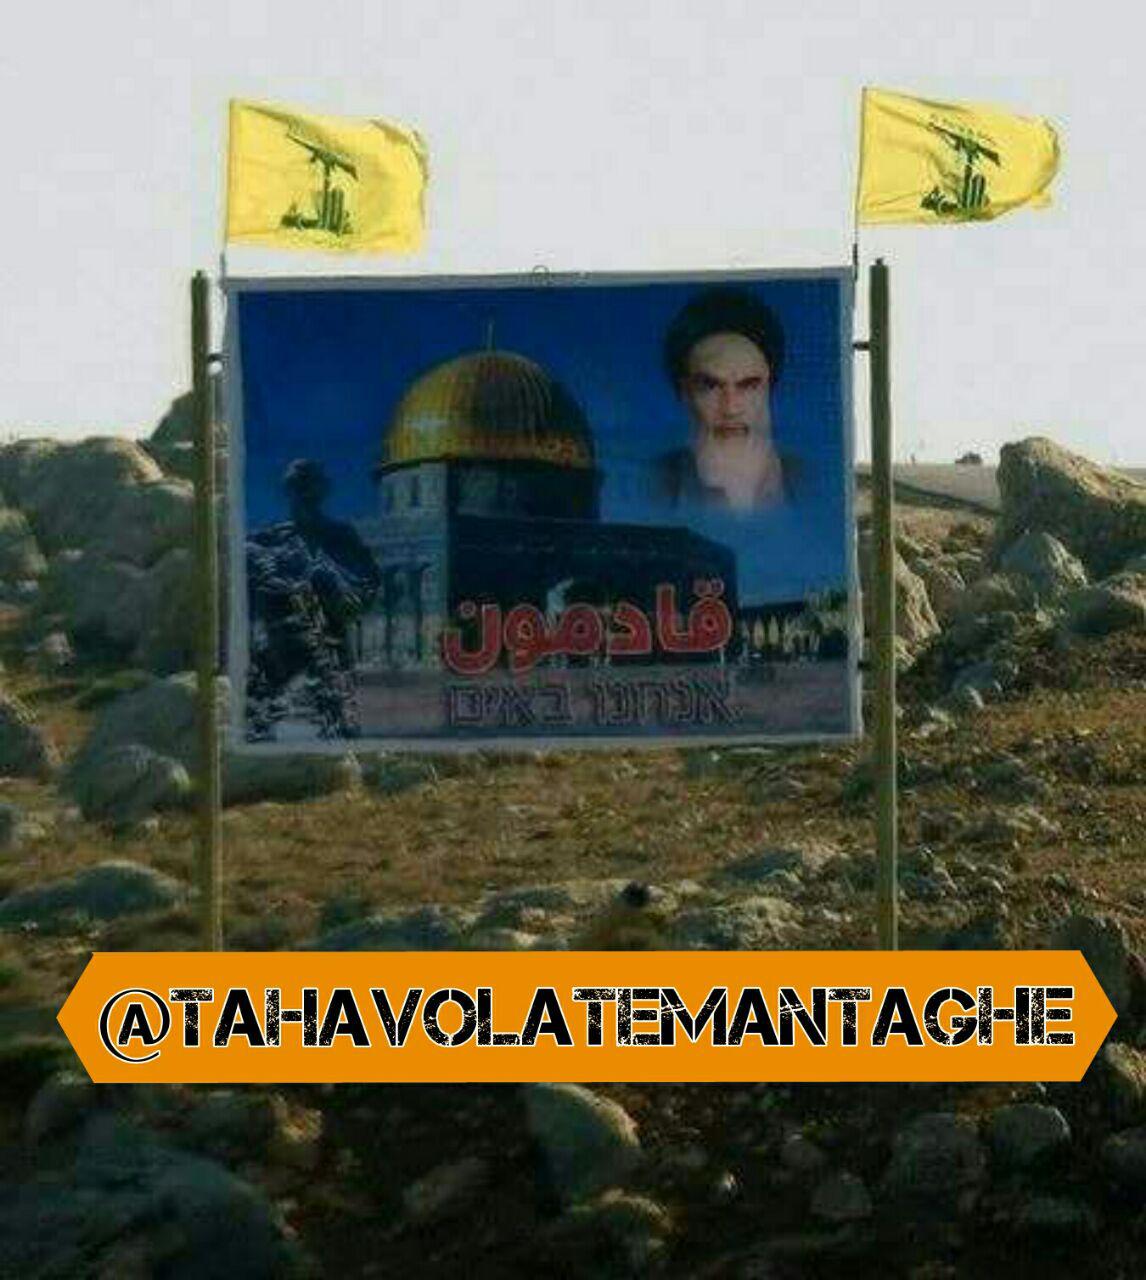 بنر حزب الله لبنان در مرز فلسطین که رژیم صهیونیستی را تحریک کرد + عکس